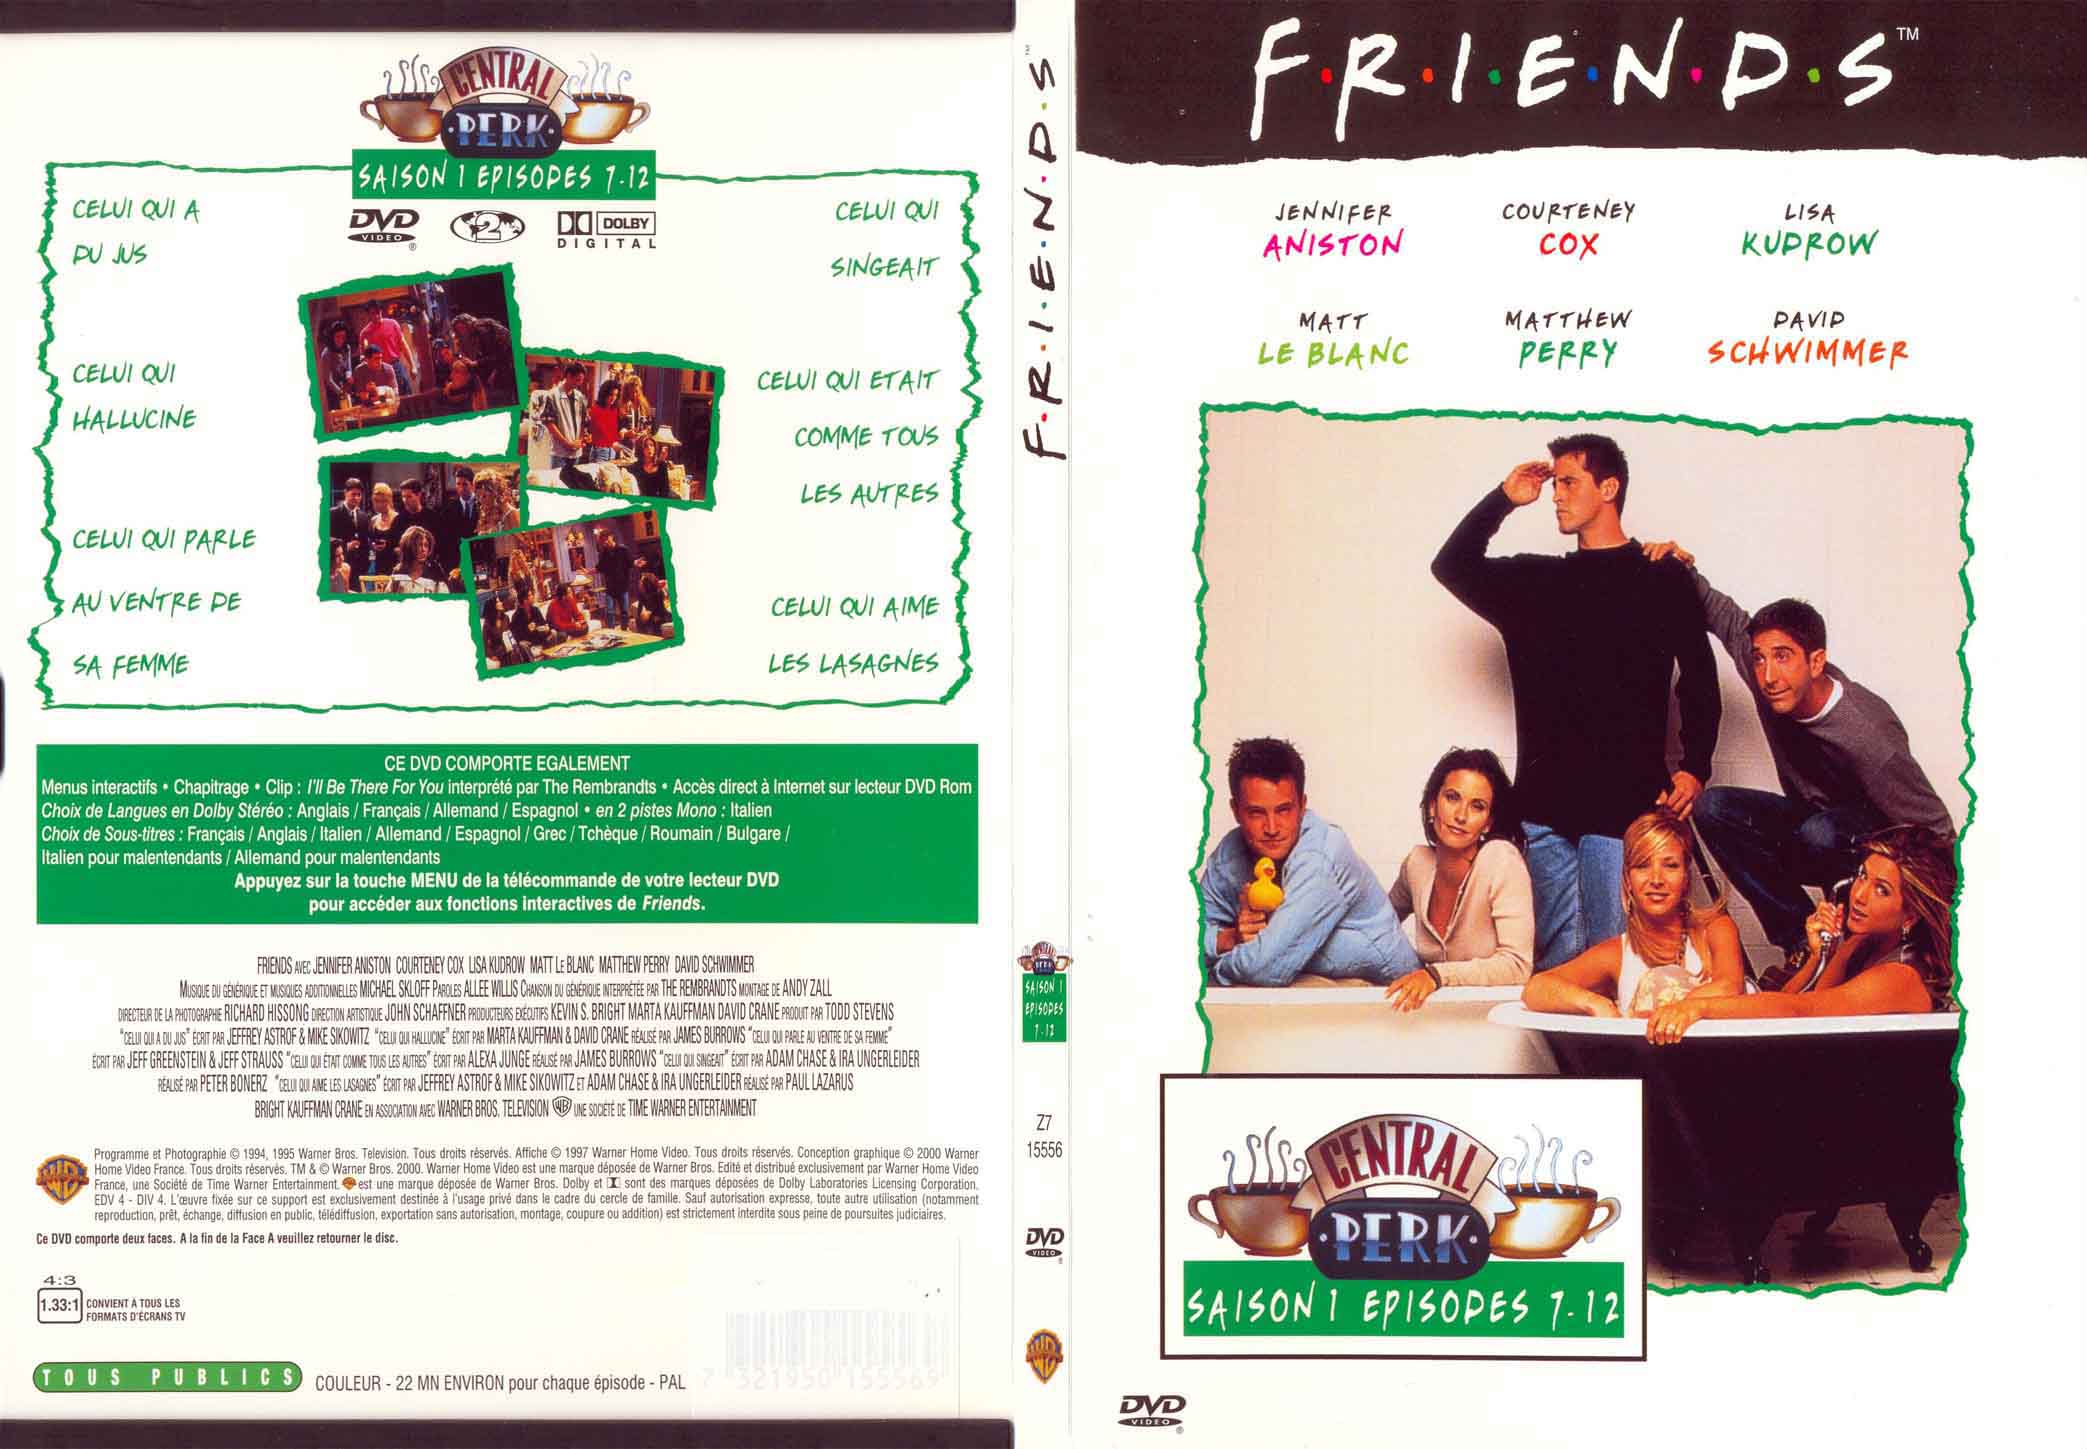 Jaquette DVD Friends saison 1 dvd 2 - SLIM